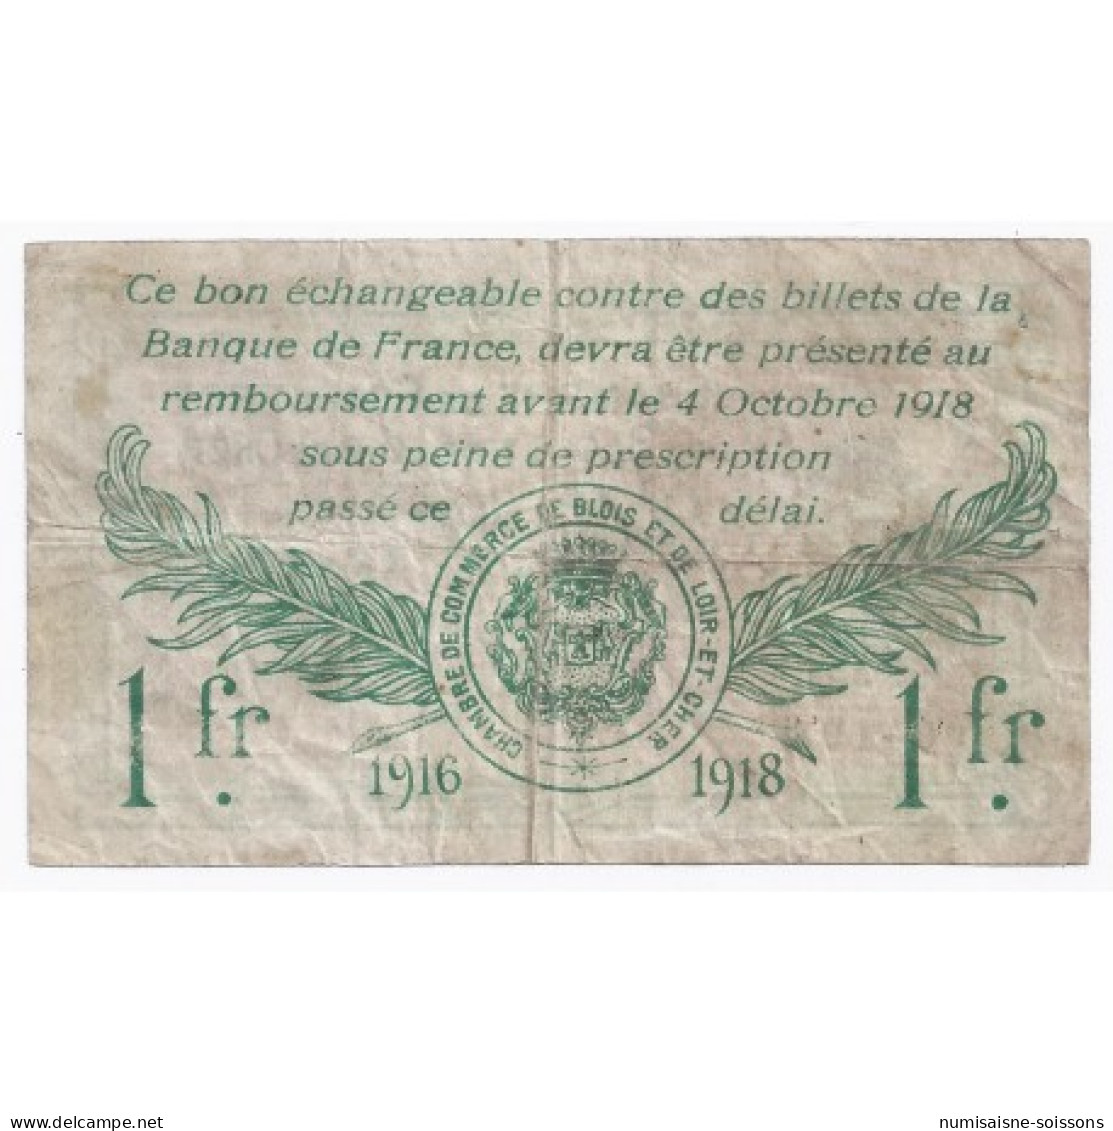 41 - BLOIS ET LOIR-ET-CHER - CHAMBRE DE COMMERCE - 1 FRANC - 03/10/1916 - TB+ - Bons & Nécessité